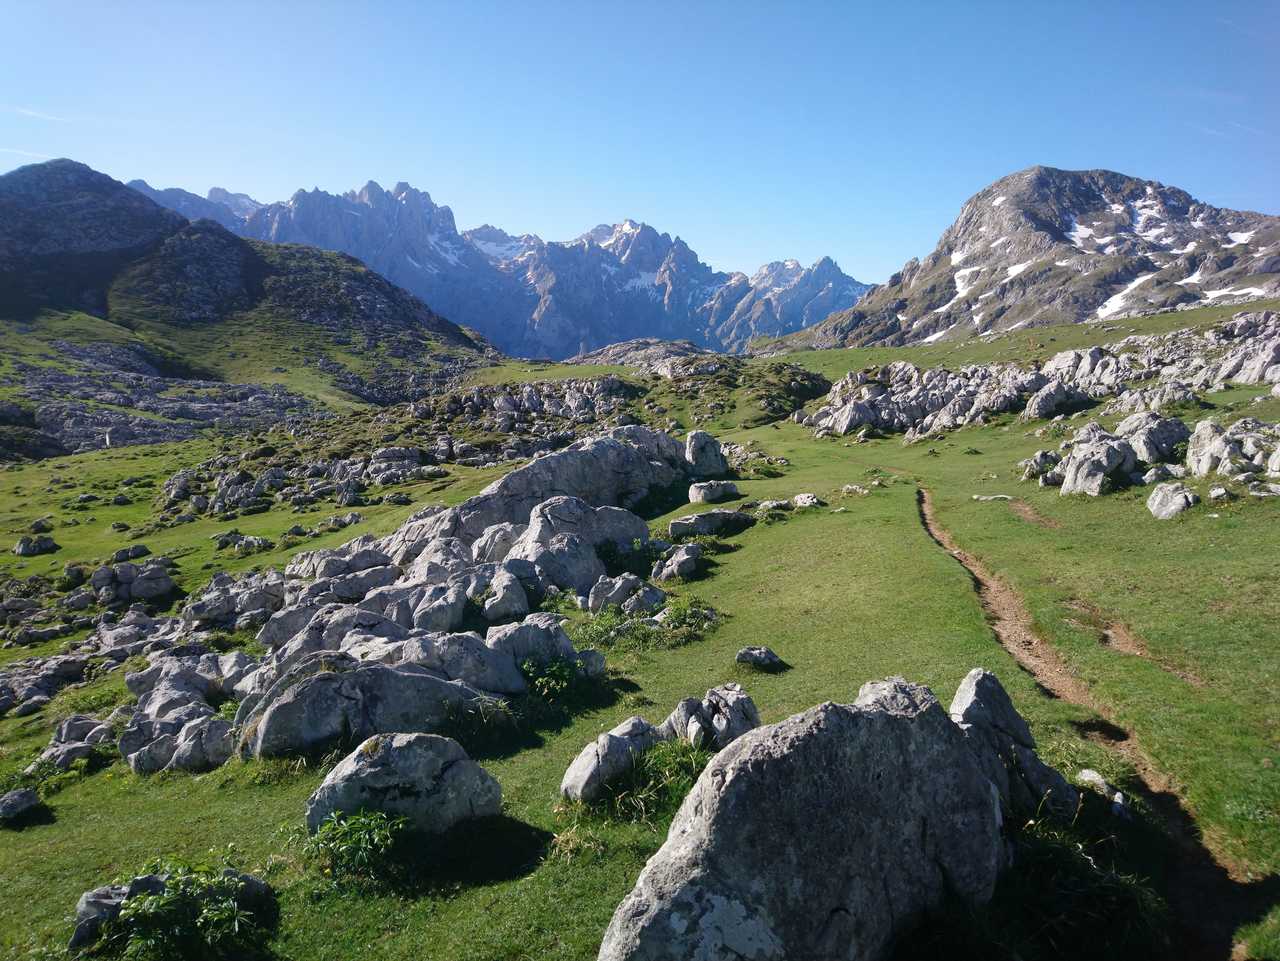 Sentier entre des étendues d'herbes vertes les sommets des Picos des Europa derrière